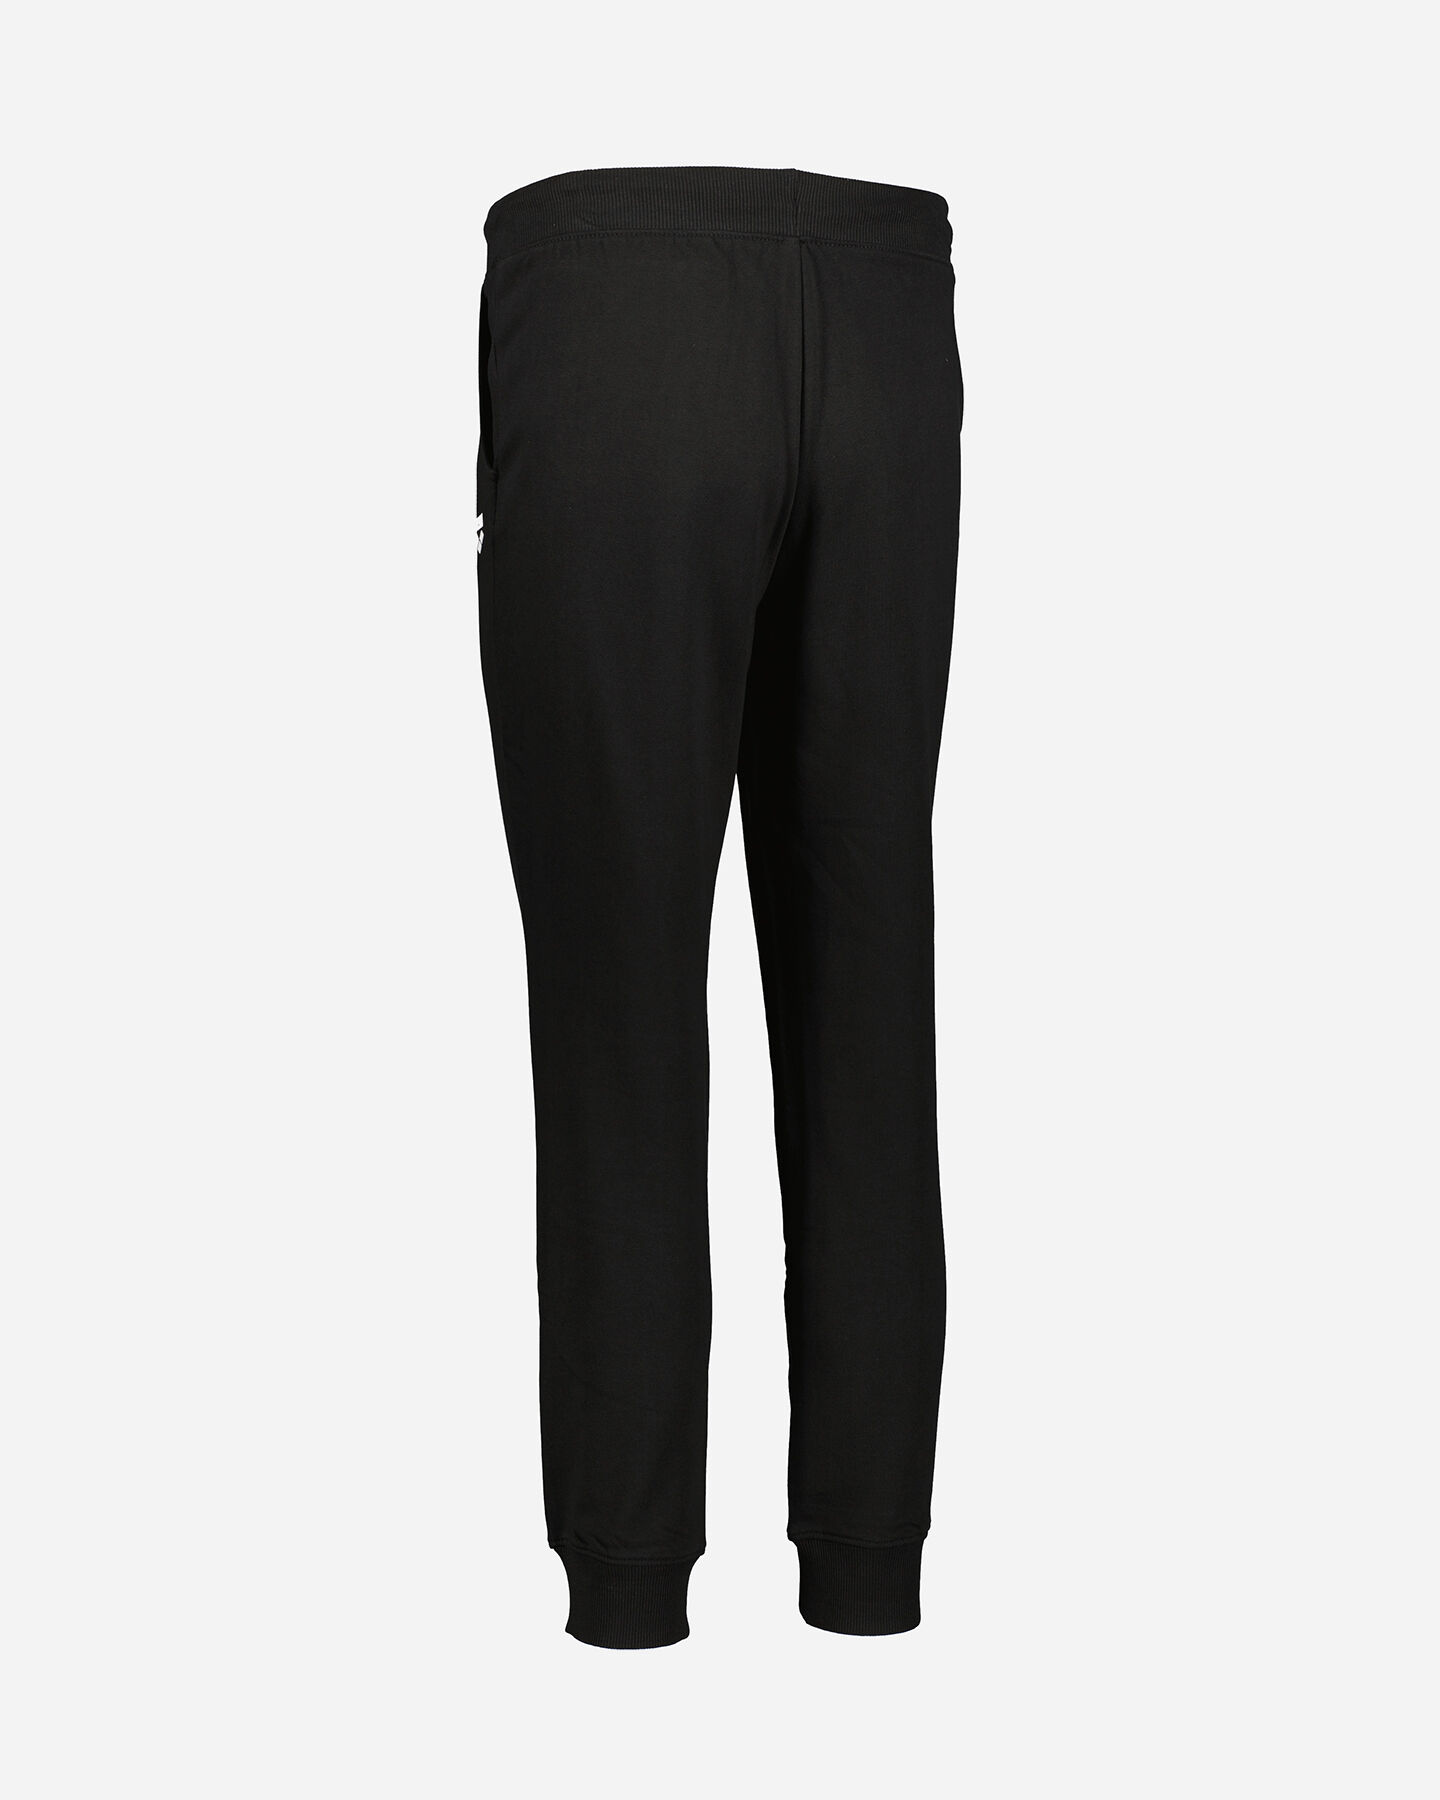  Pantalone ARENA CUFF W S4094341|050|XS scatto 2